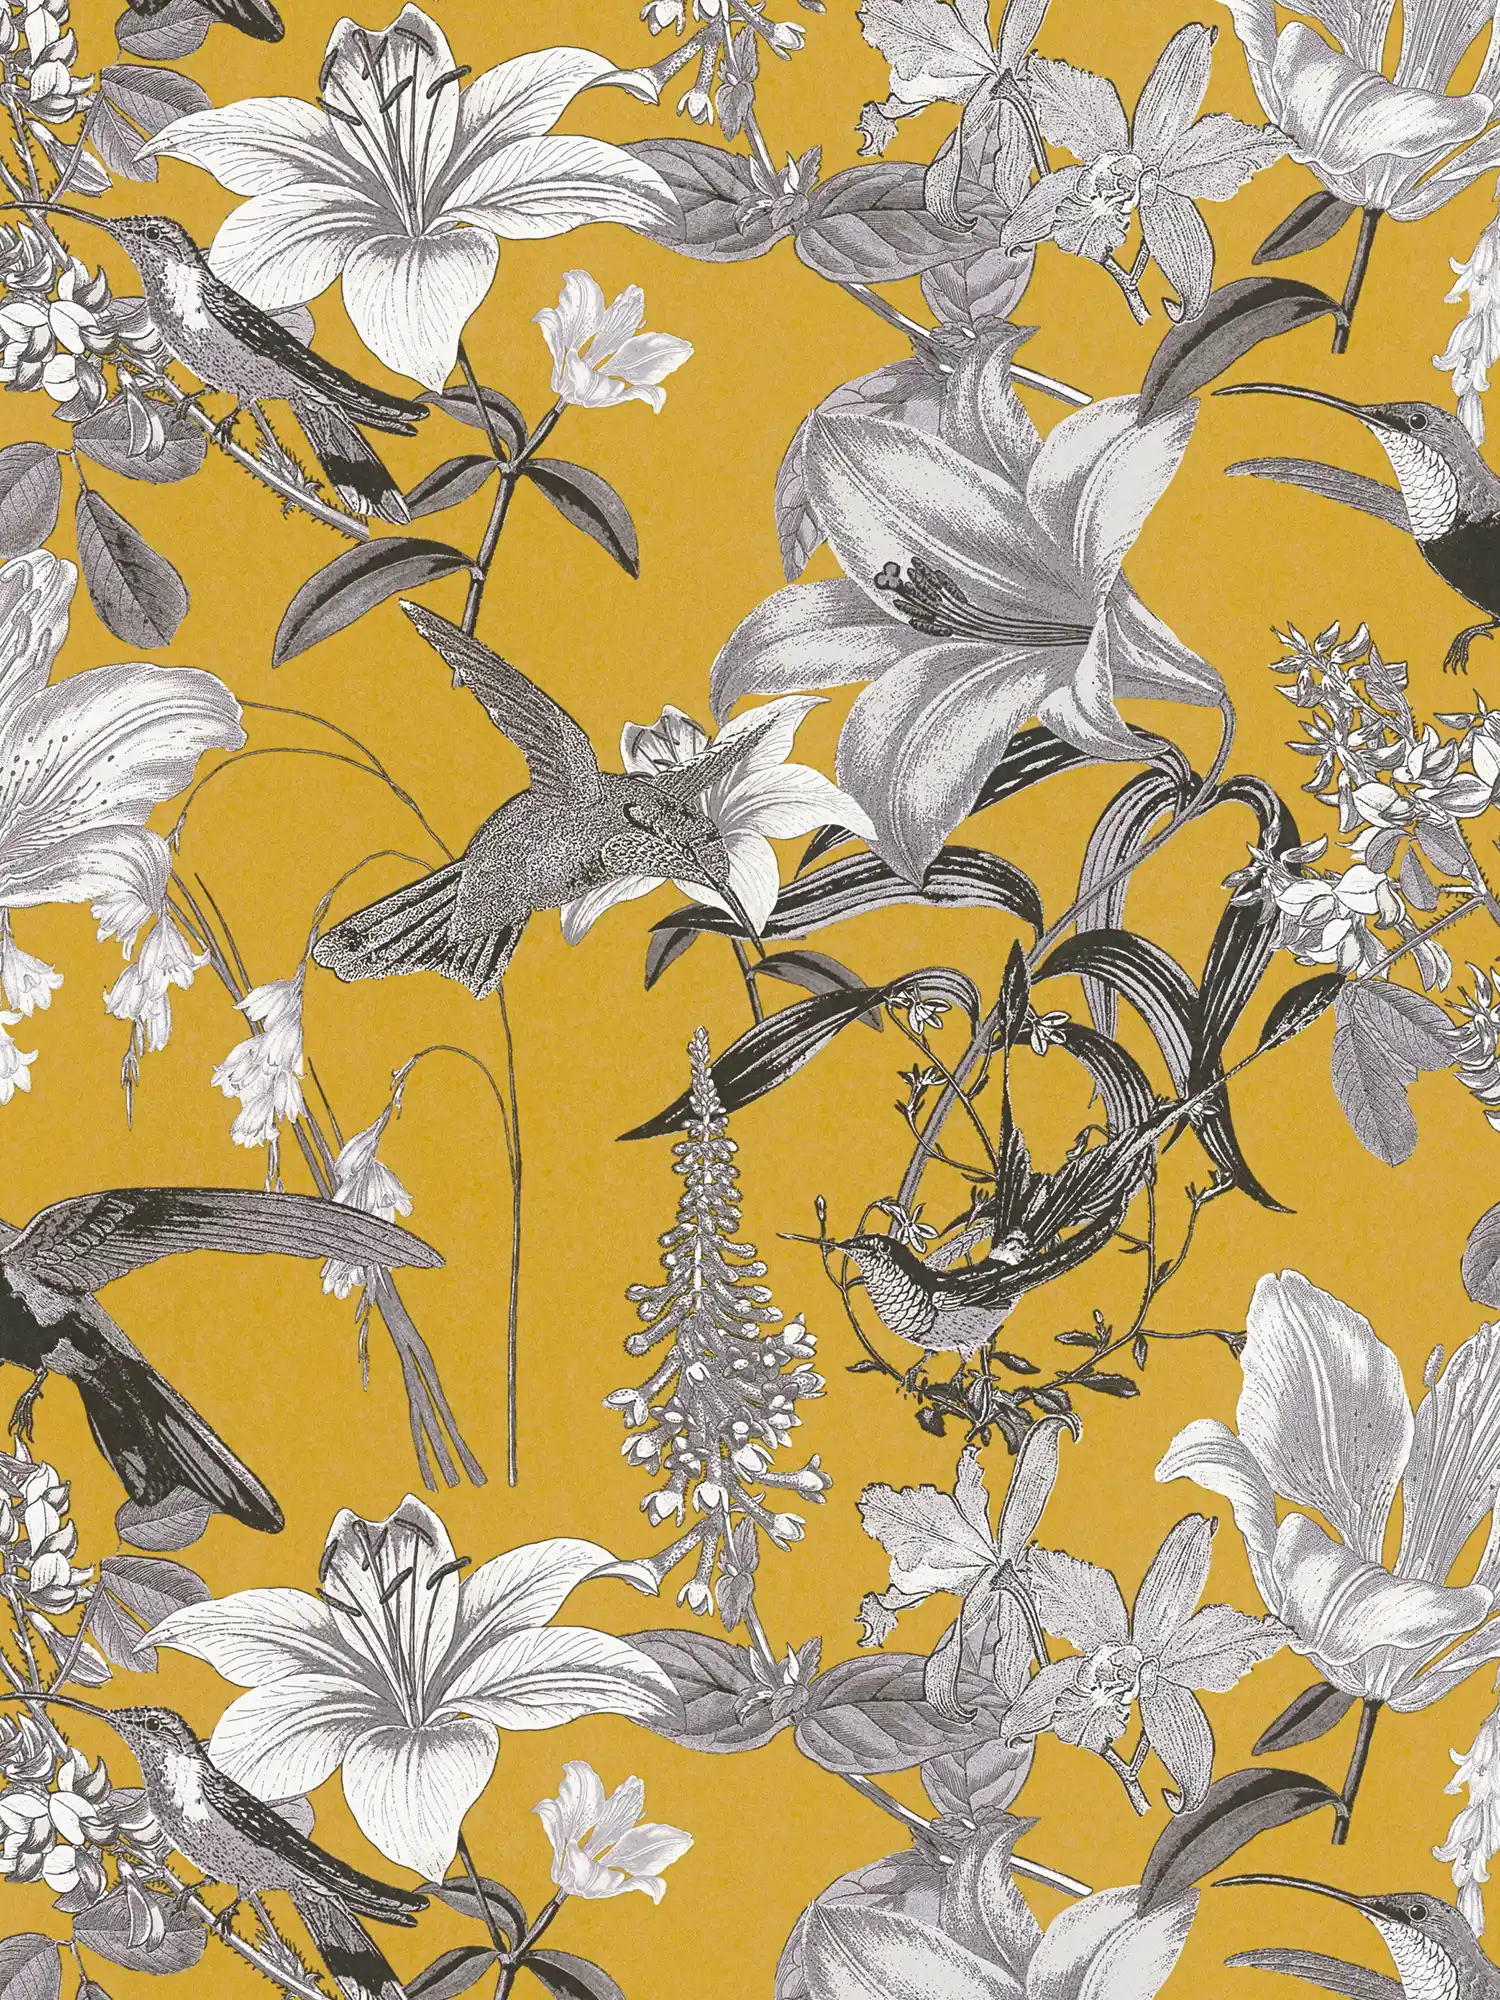 Carta da parati floreale giallo senape con fiori e motivi di colibrì - giallo, grigio, nero
